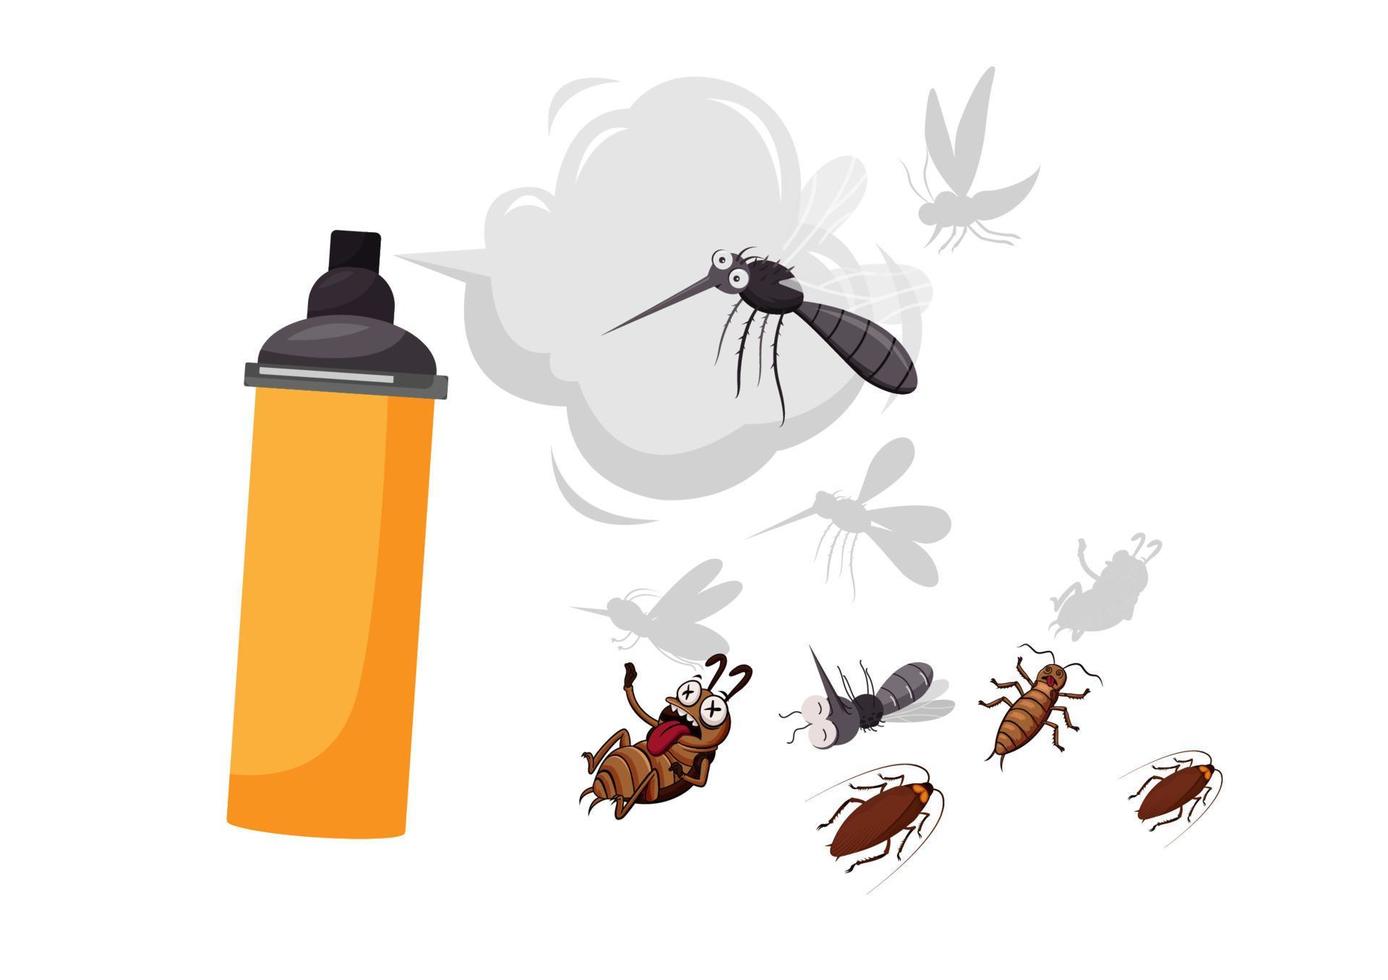 spray repelente de mosquitos e insectos el concepto de repeler los gérmenes que vienen con mosquitos e insectos. use un aerosol químico activo. vector de ilustración de dibujos animados de estilo plano